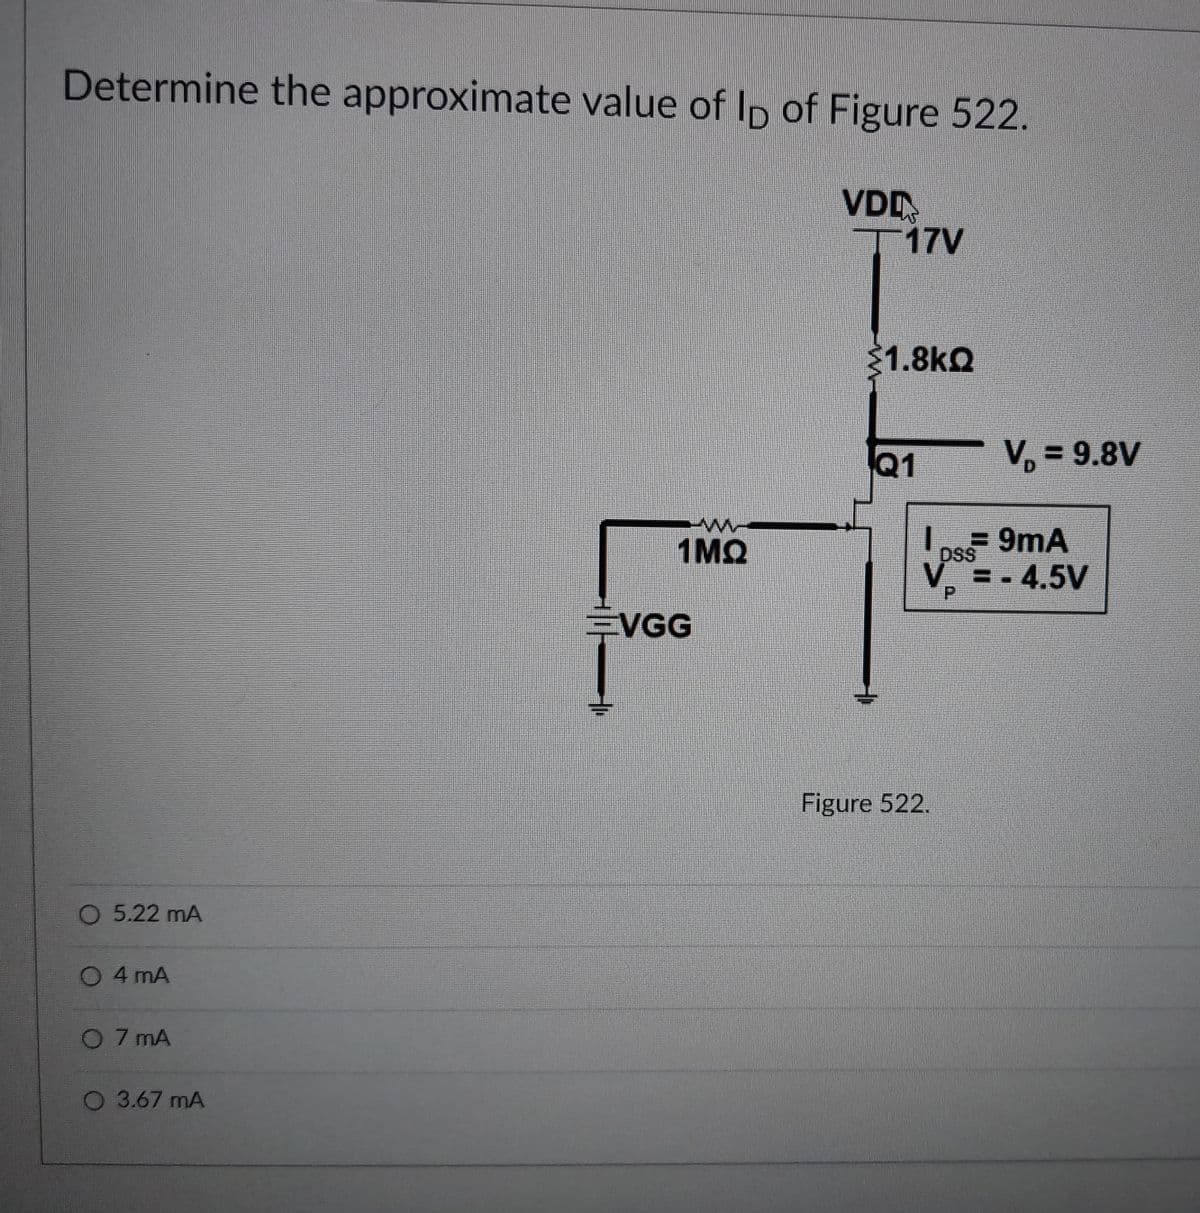 Determine the approximate value of Ip of Figure 522.
VDD
T17V
1.8kQ
Q1
V, = 9.8V
1MQ
9mA
DSS
V = - 4.5V
EVGG
Figure 522.
O 5.22 mA
O 4 mA
O 7 mA
O 3.67 mA
